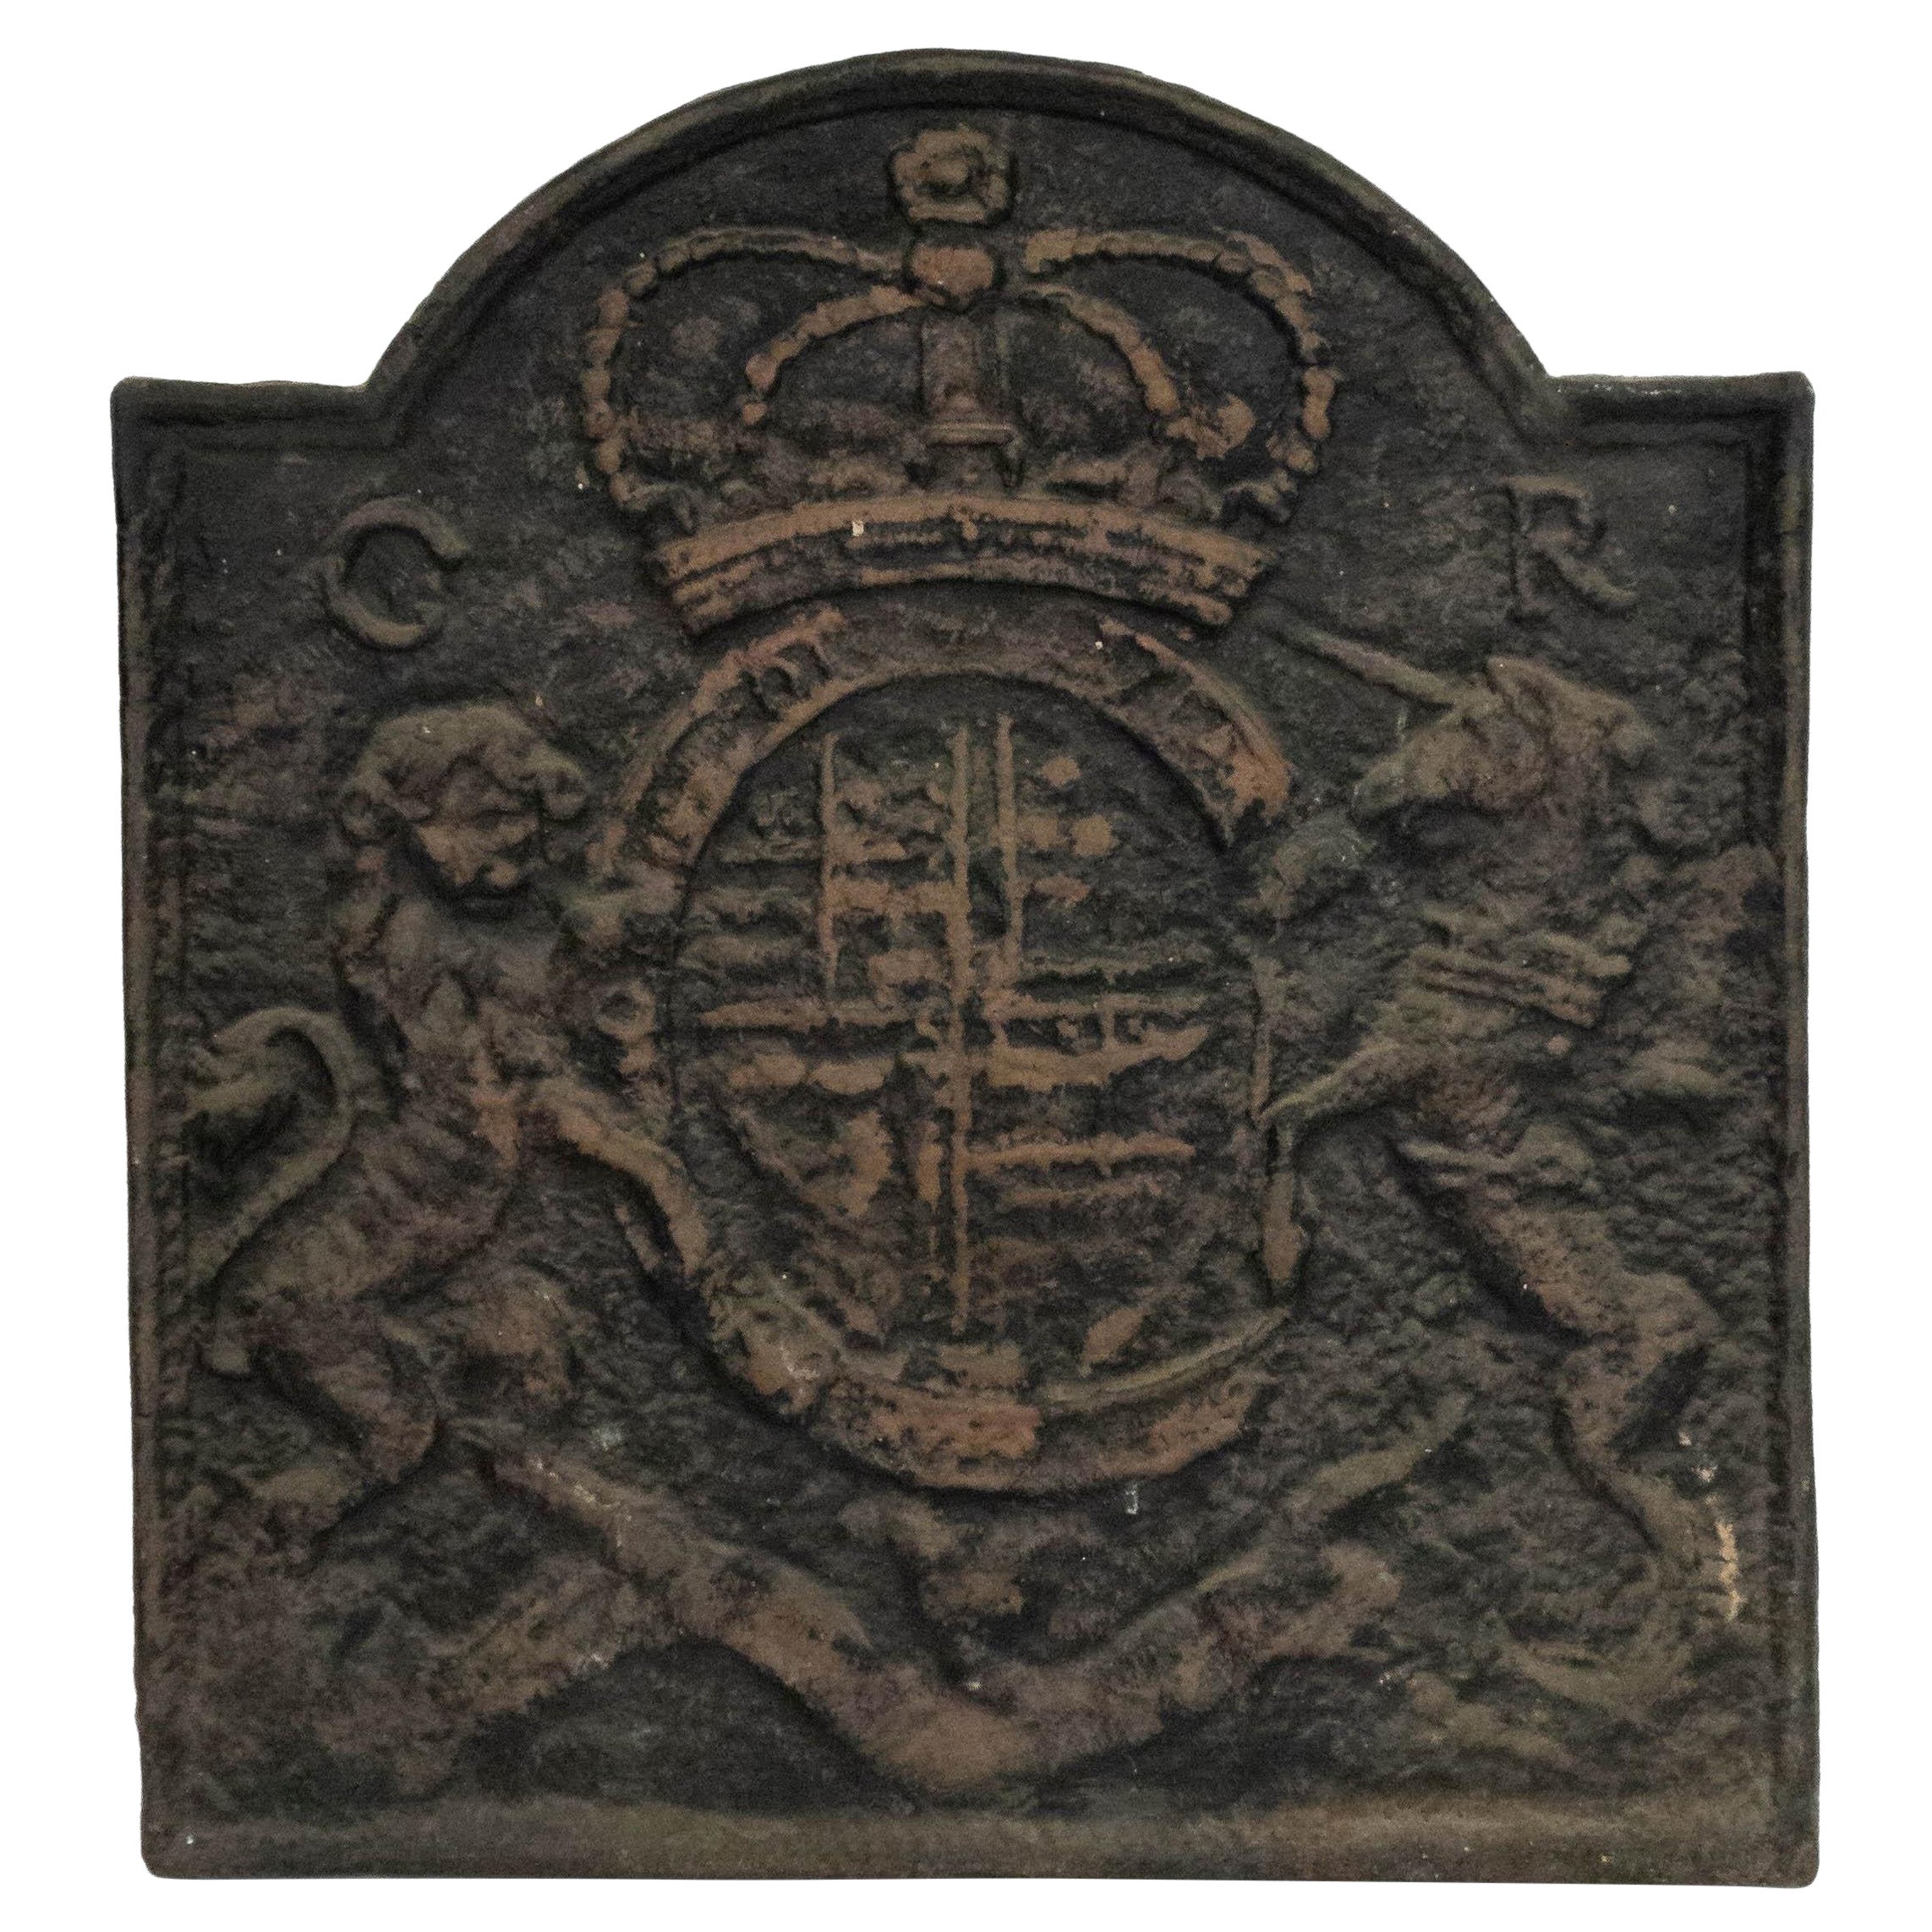 Englischer englischer Wappenmantel aus Gusseisen im georgianischen Stil, Wandtafel